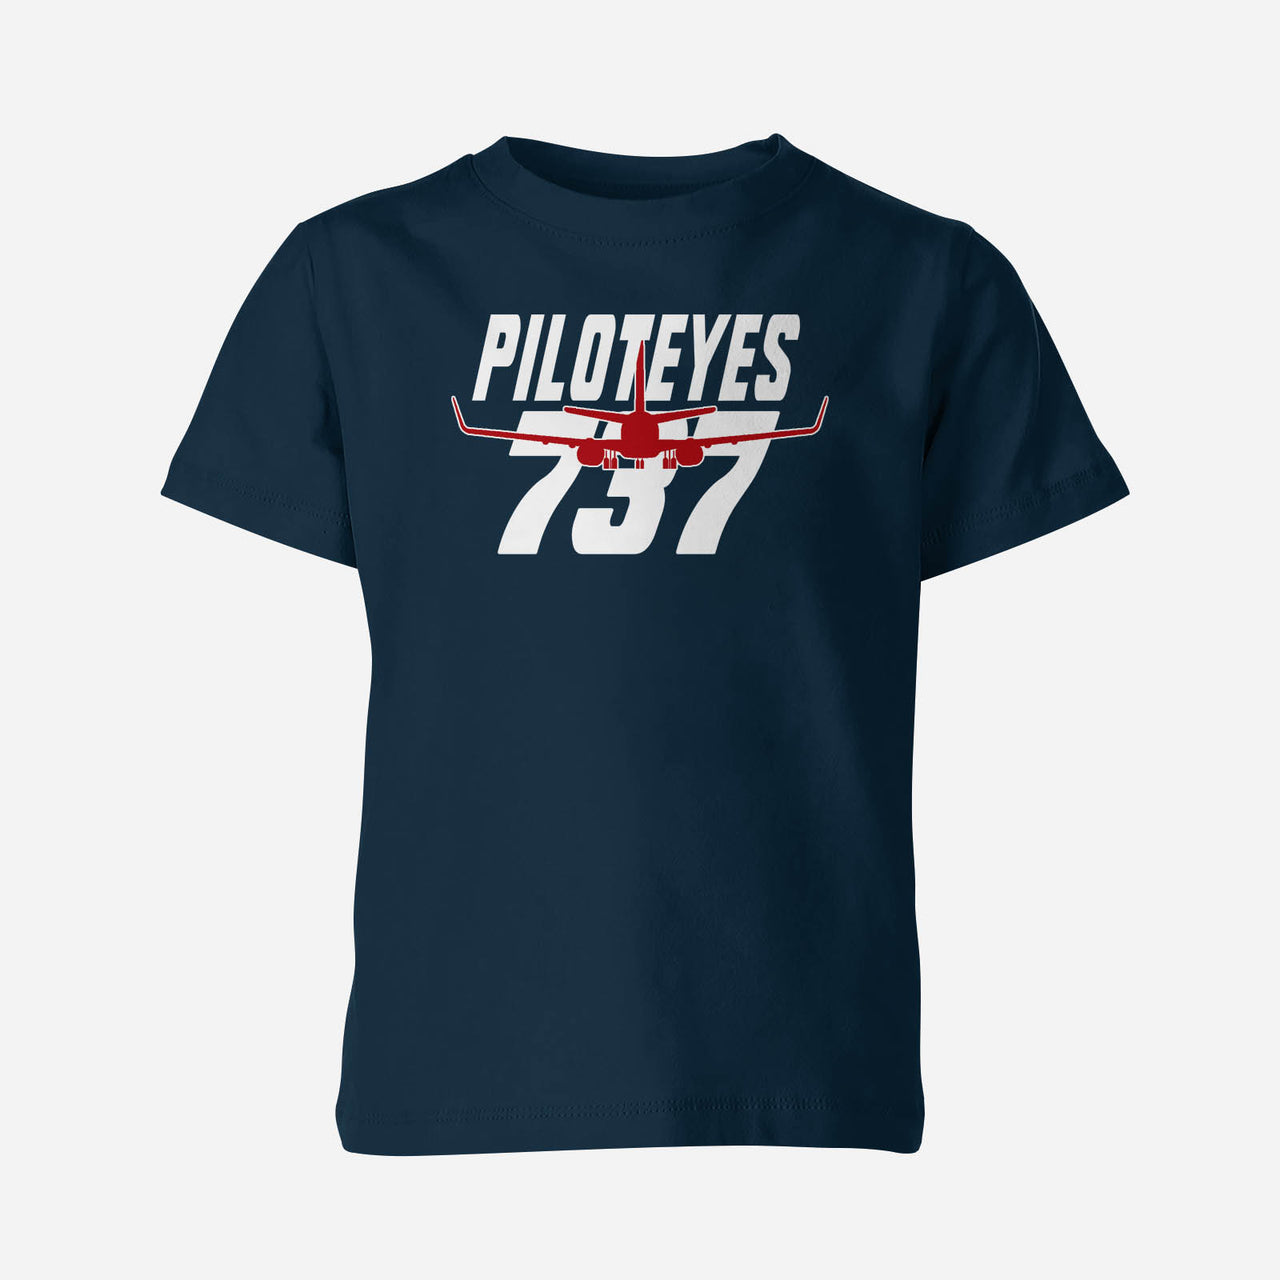 Amazing Piloteyes737 Designed Children T-Shirts